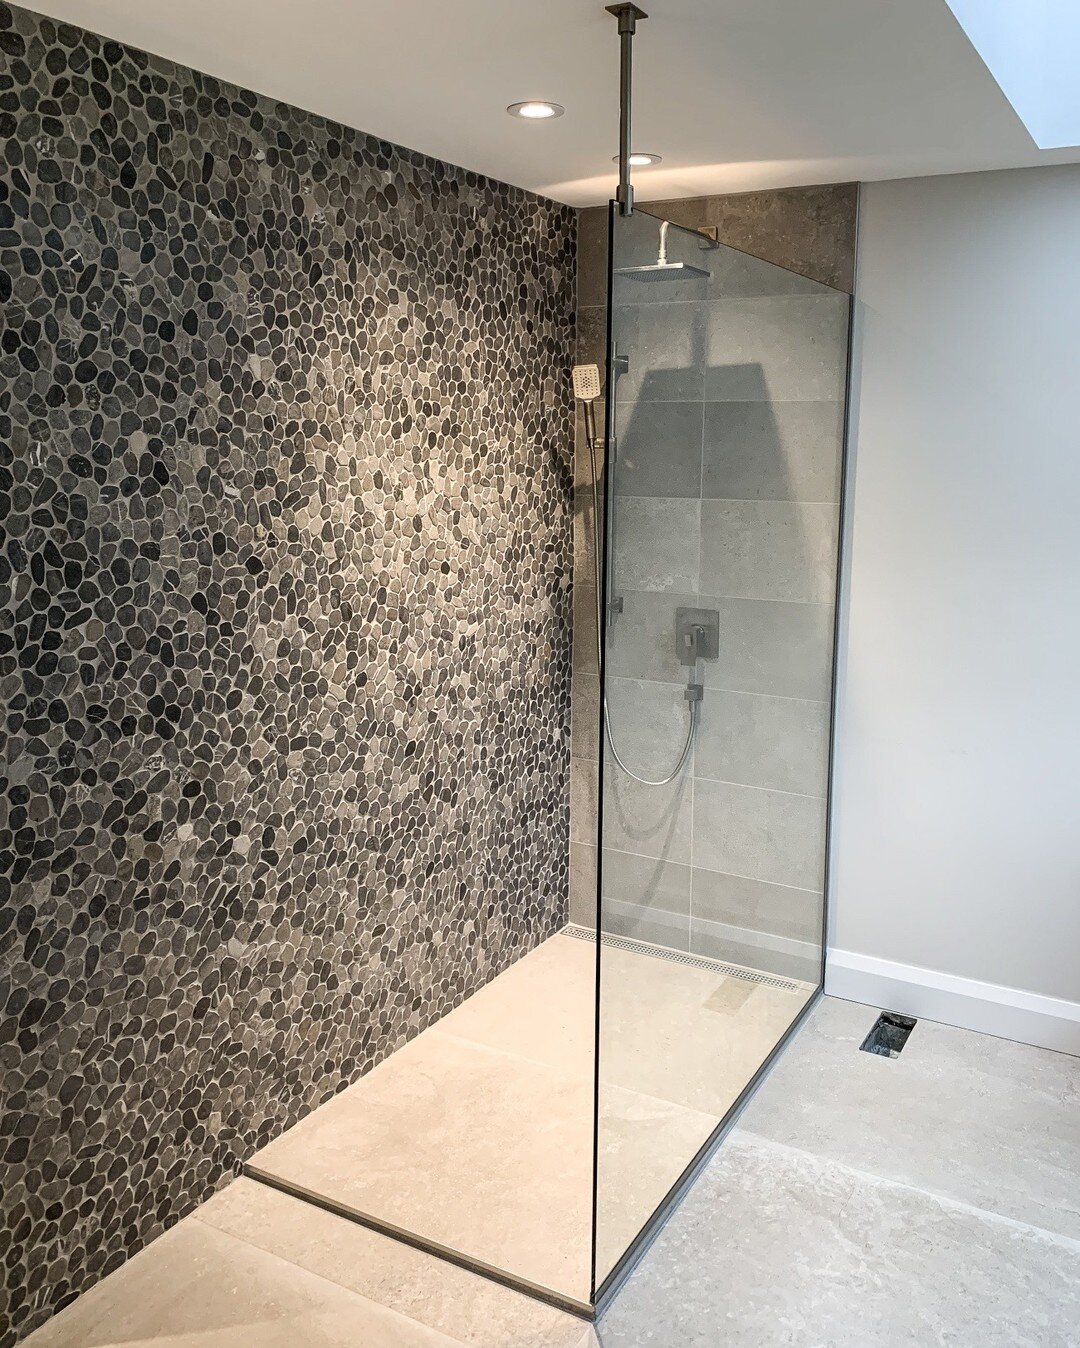 Stunning framess glass shower ❤